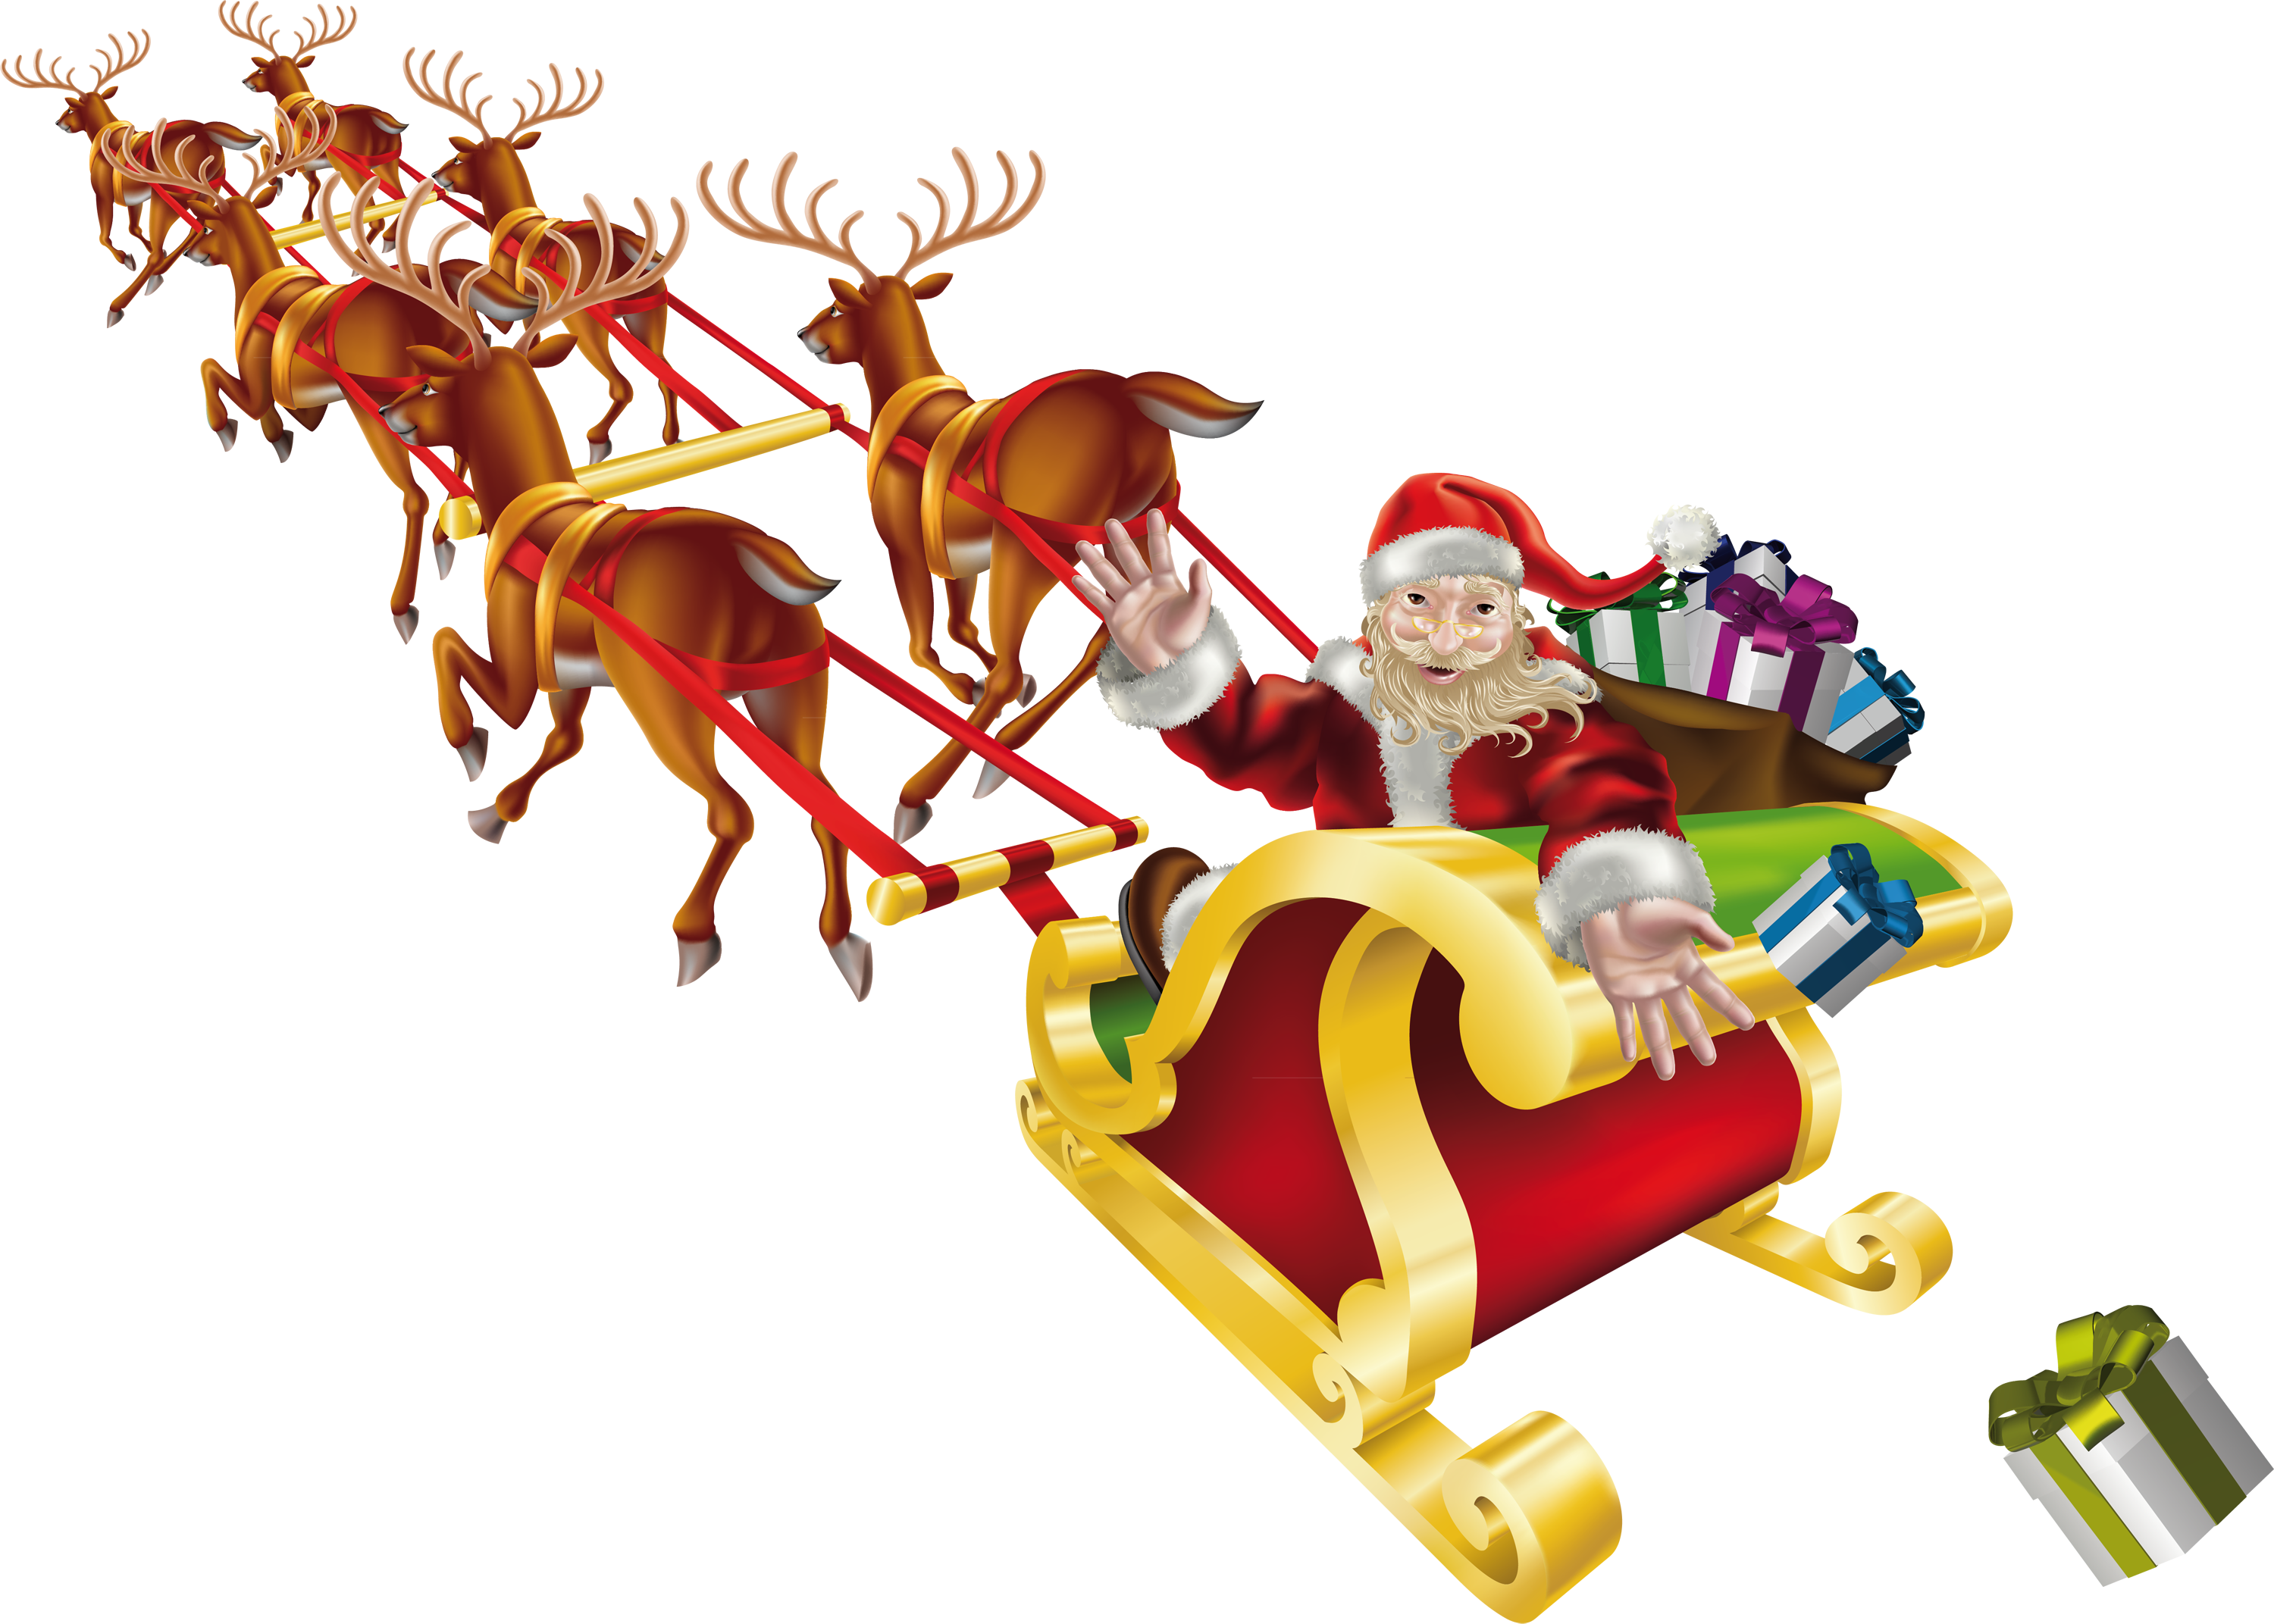 santa claus sleigh png